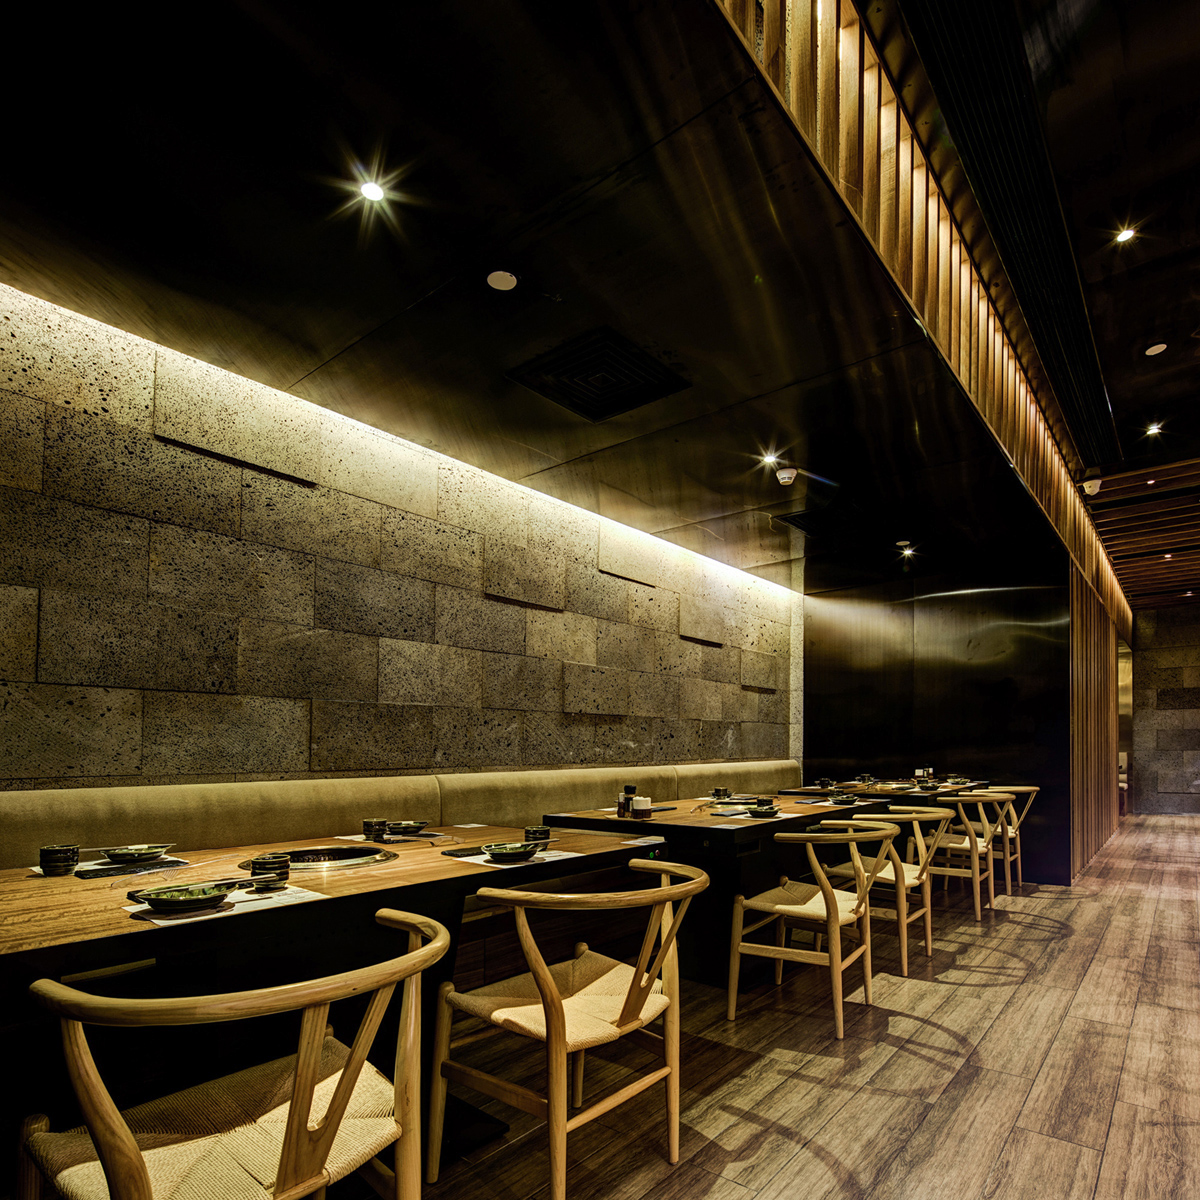 日式餐厅 日式烤肉 餐厅设计 室内设计 工业 深圳